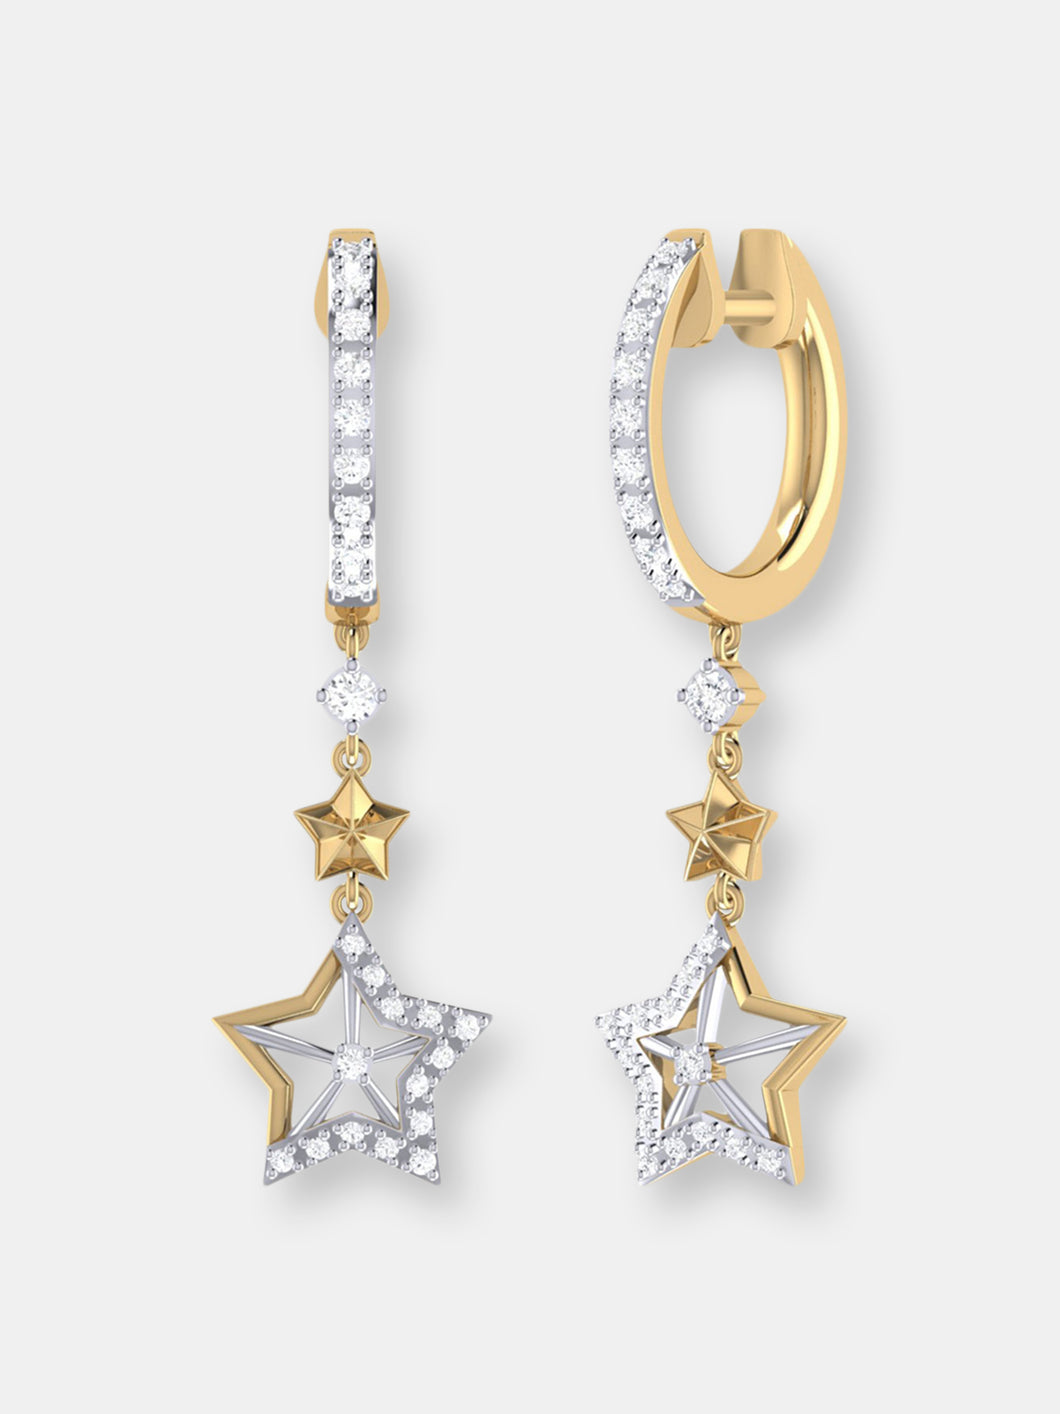 Little Star Lucky Star Diamond Hoop Earrings in 14K Yellow Gold Vermeil on Sterling Silver